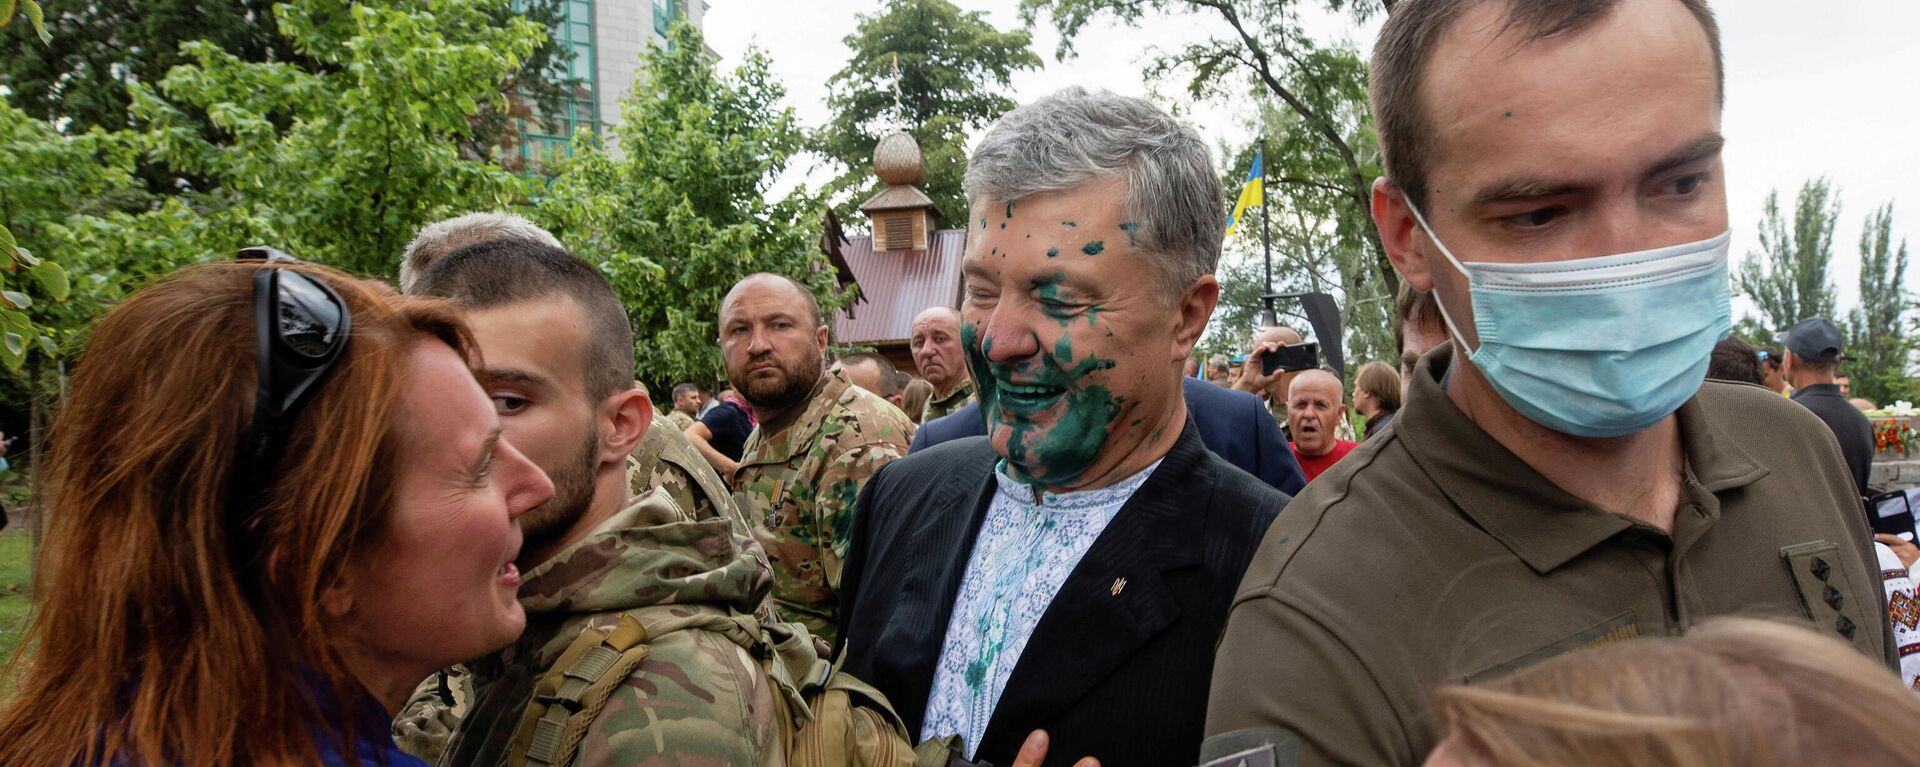 Бывший президент Украины Петр Порошенко разговаривает со сторонником после того, как нападавший на него облил зеленой жидкостью во время мероприятия - Sputnik Молдова, 1920, 27.08.2021